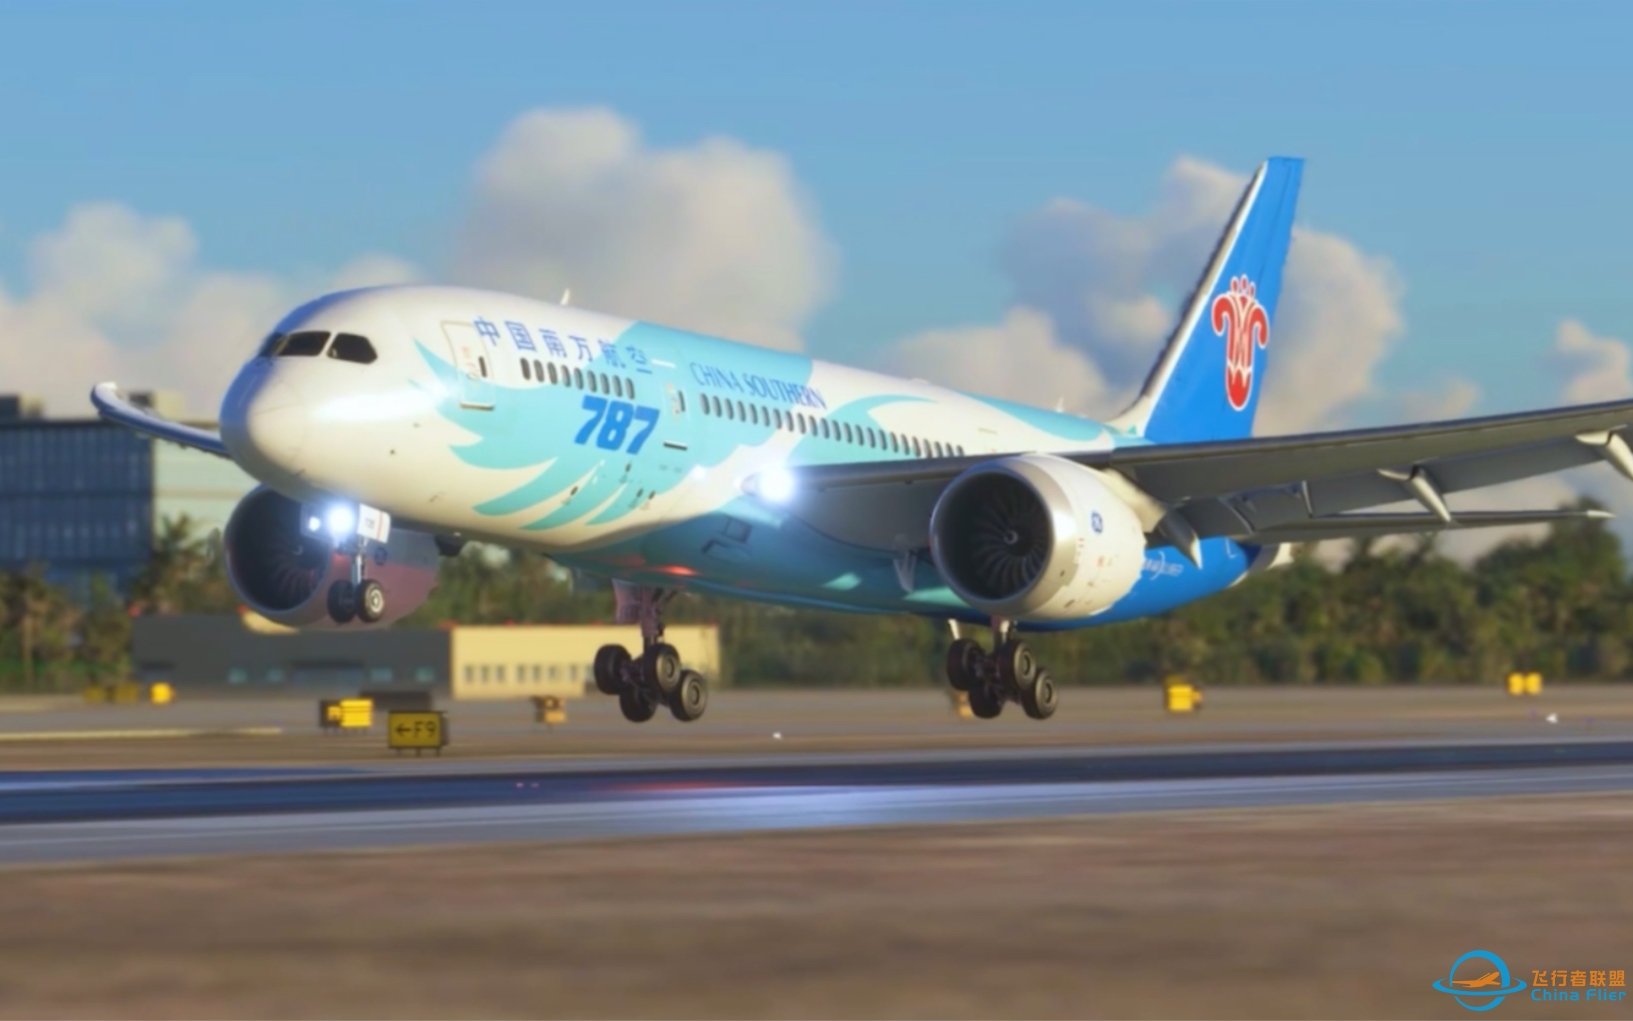 这是软着陆吗？中国南方航空787-8抵达广州白云机场(模拟飞行2020)-9335 